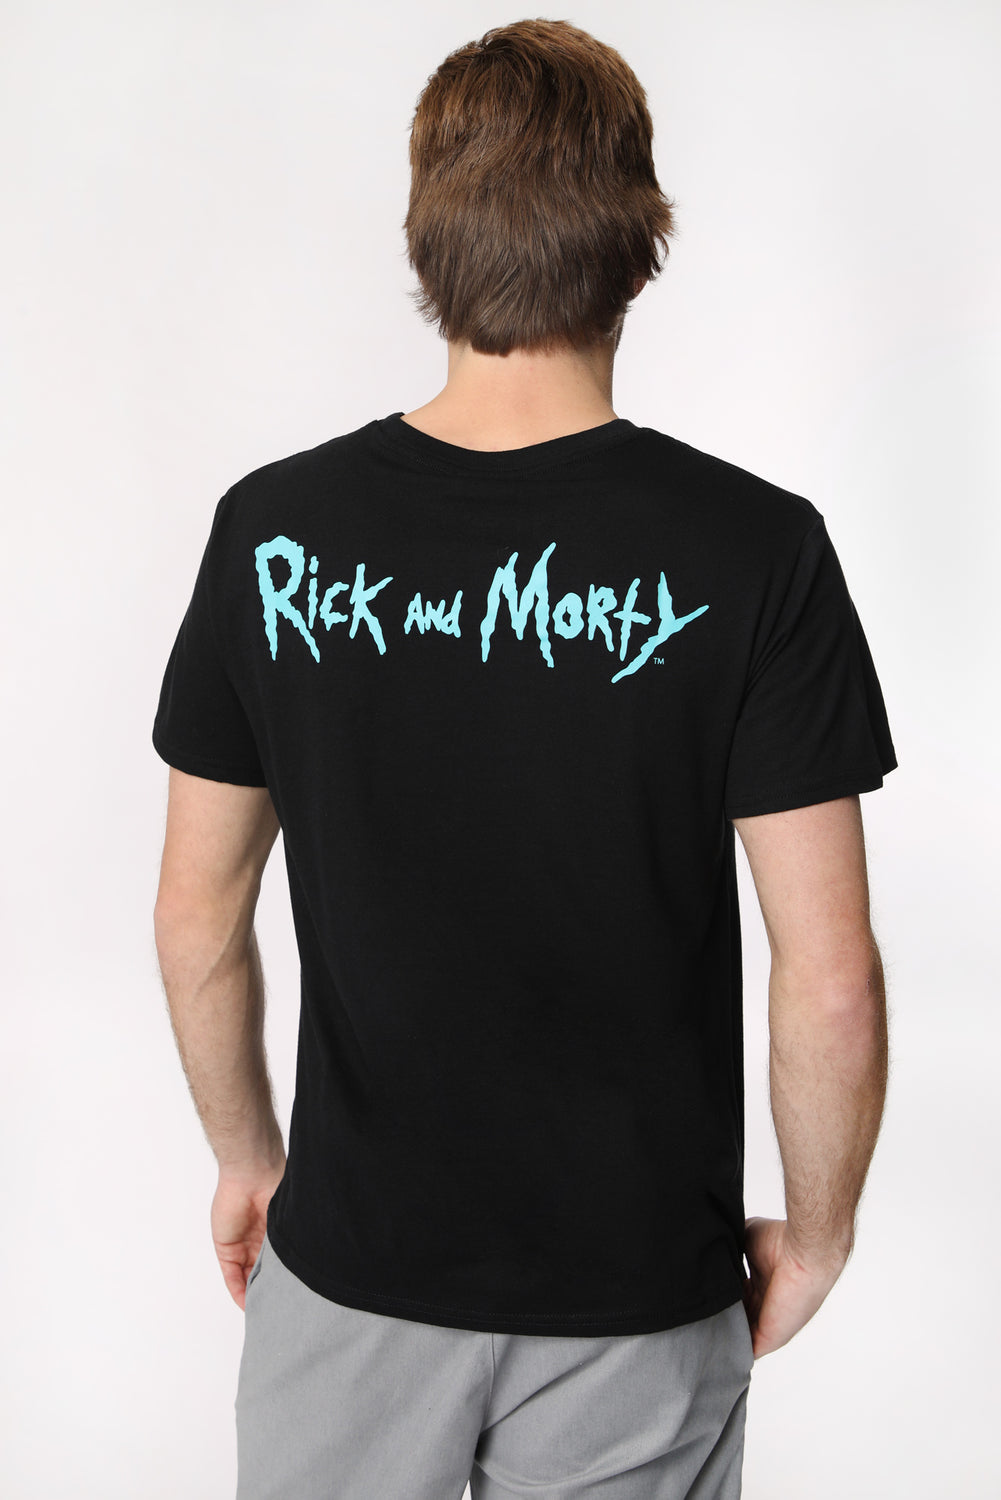 T-Shirt Imprimé Portal Boys Rick et Morty Homme T-Shirt Imprimé Portal Boys Rick et Morty Homme